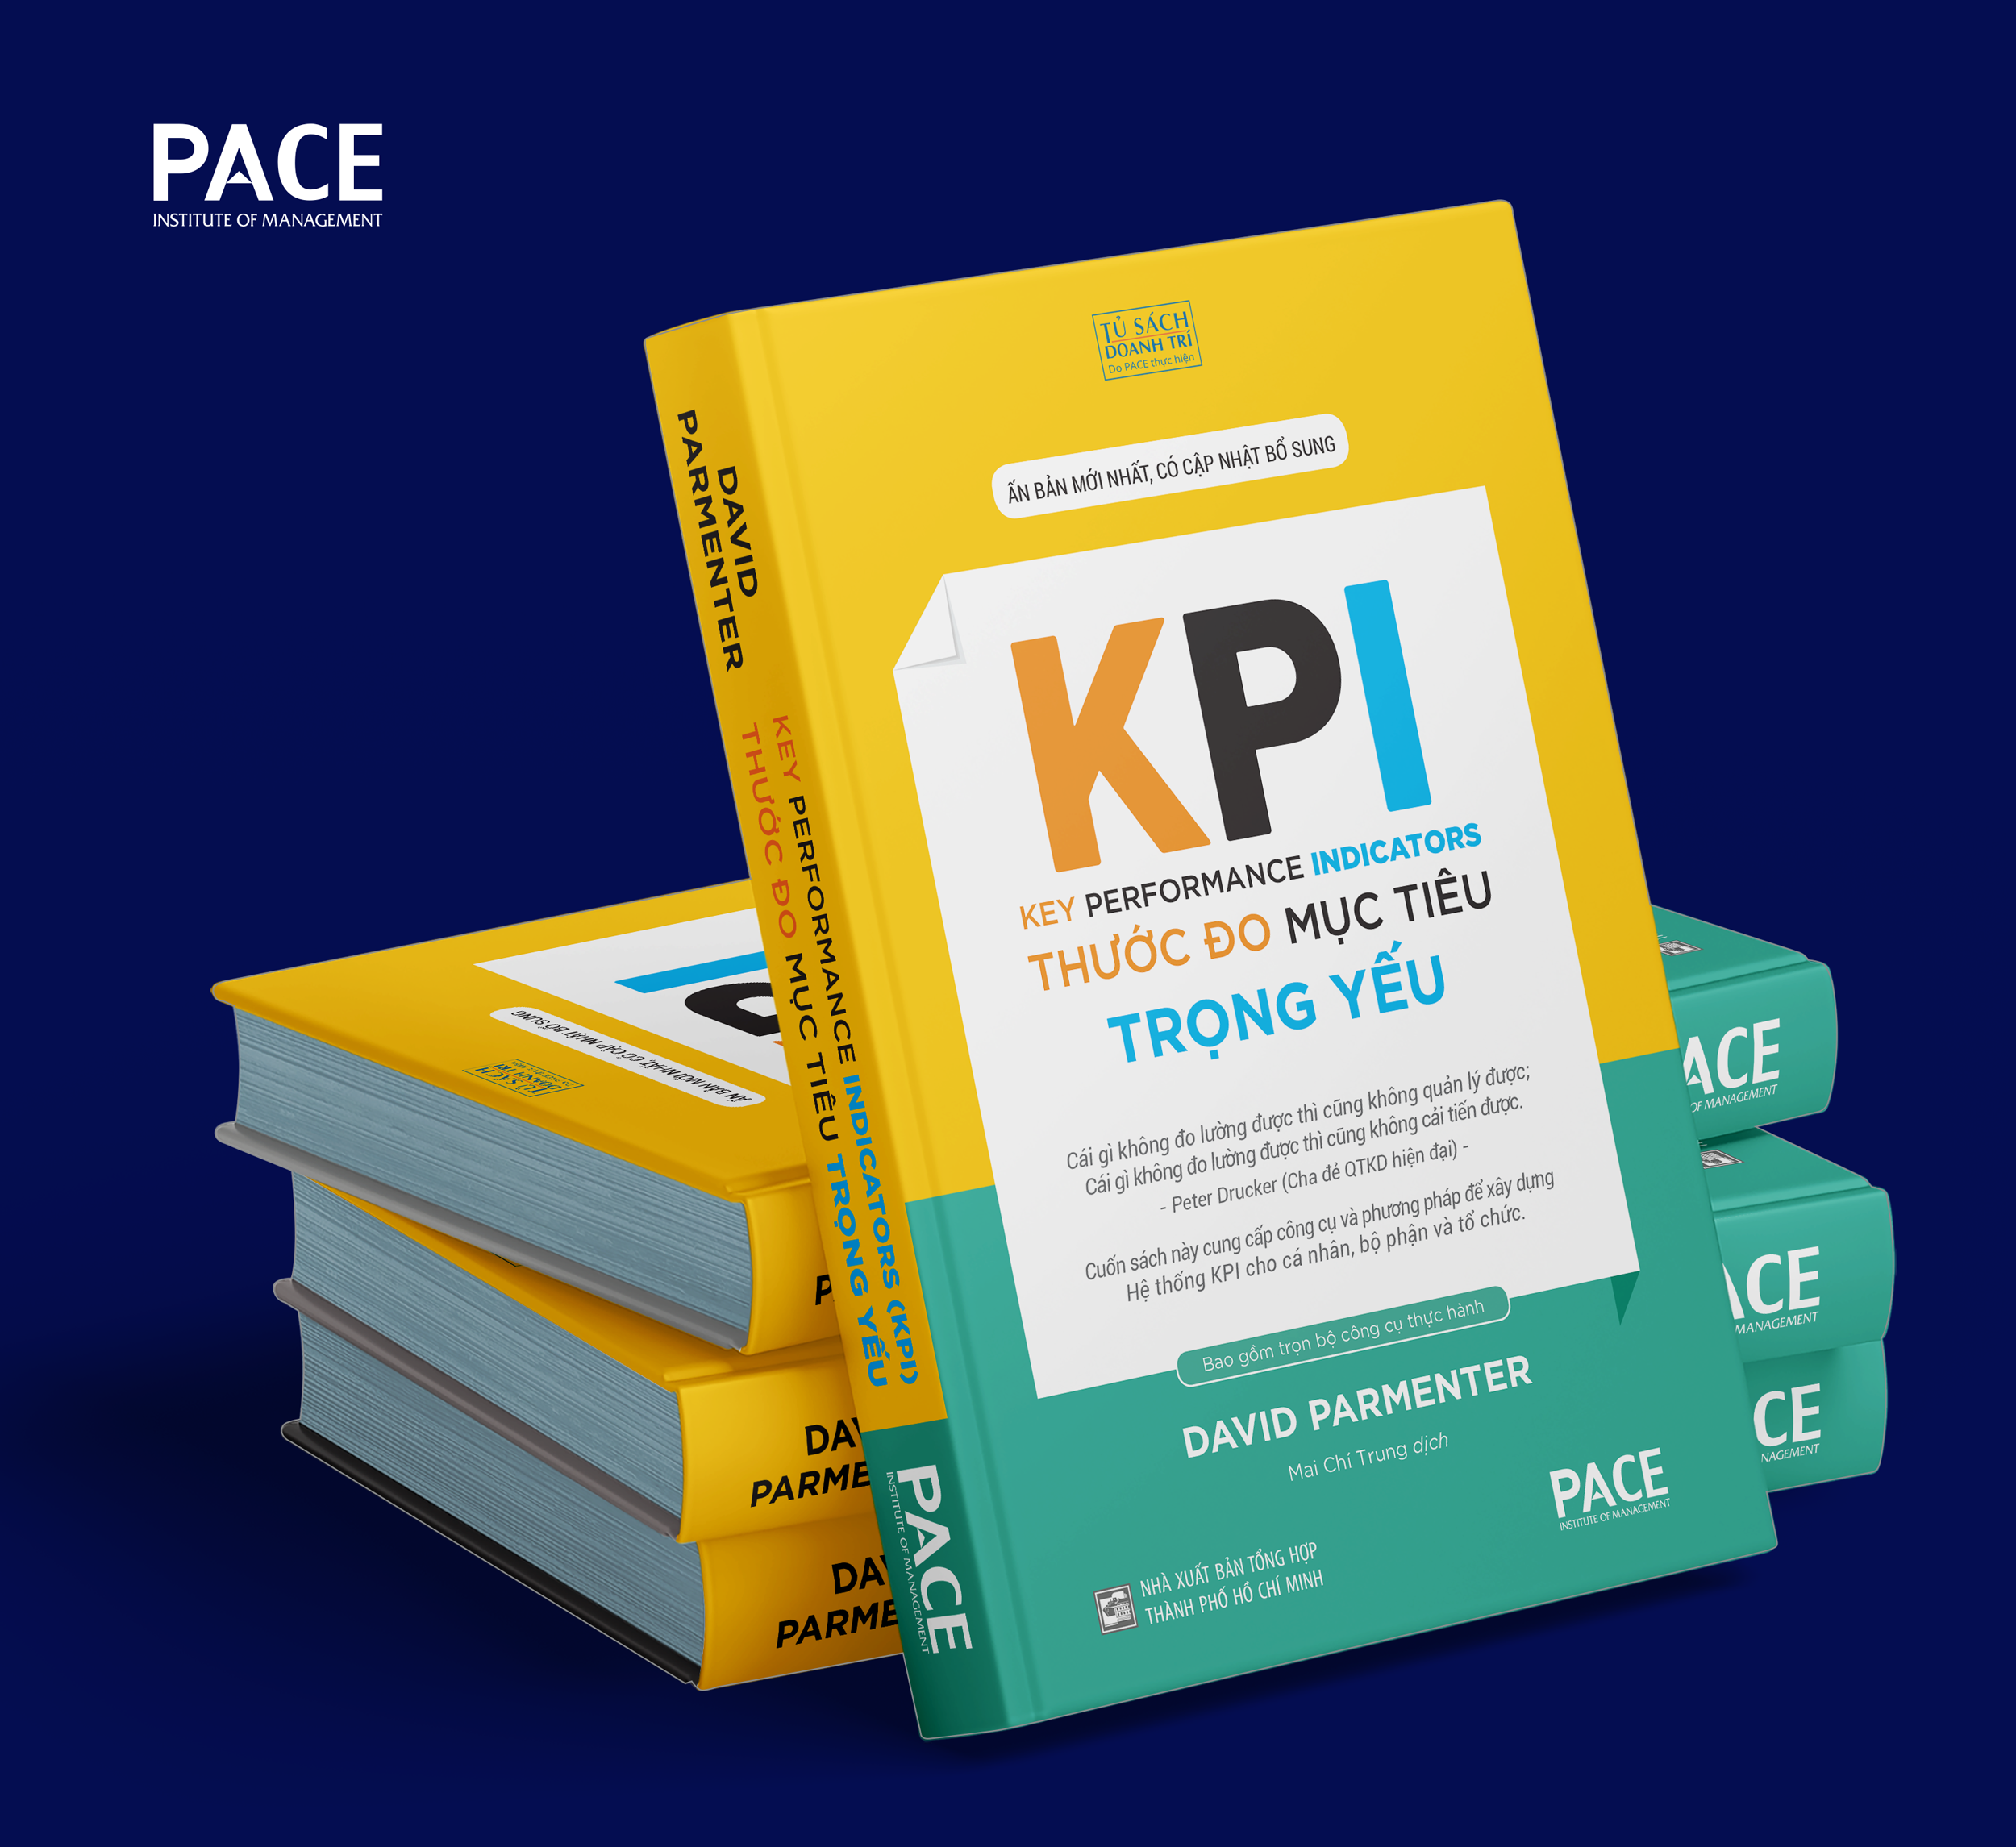 (Bìa Cứng) KPI - THƯỚC ĐO MỤC TIÊU TRỌNG YẾU (The Key Performance Indicators) - David Parmenter - Mai Chí Trung dịch - Tái bản 2023